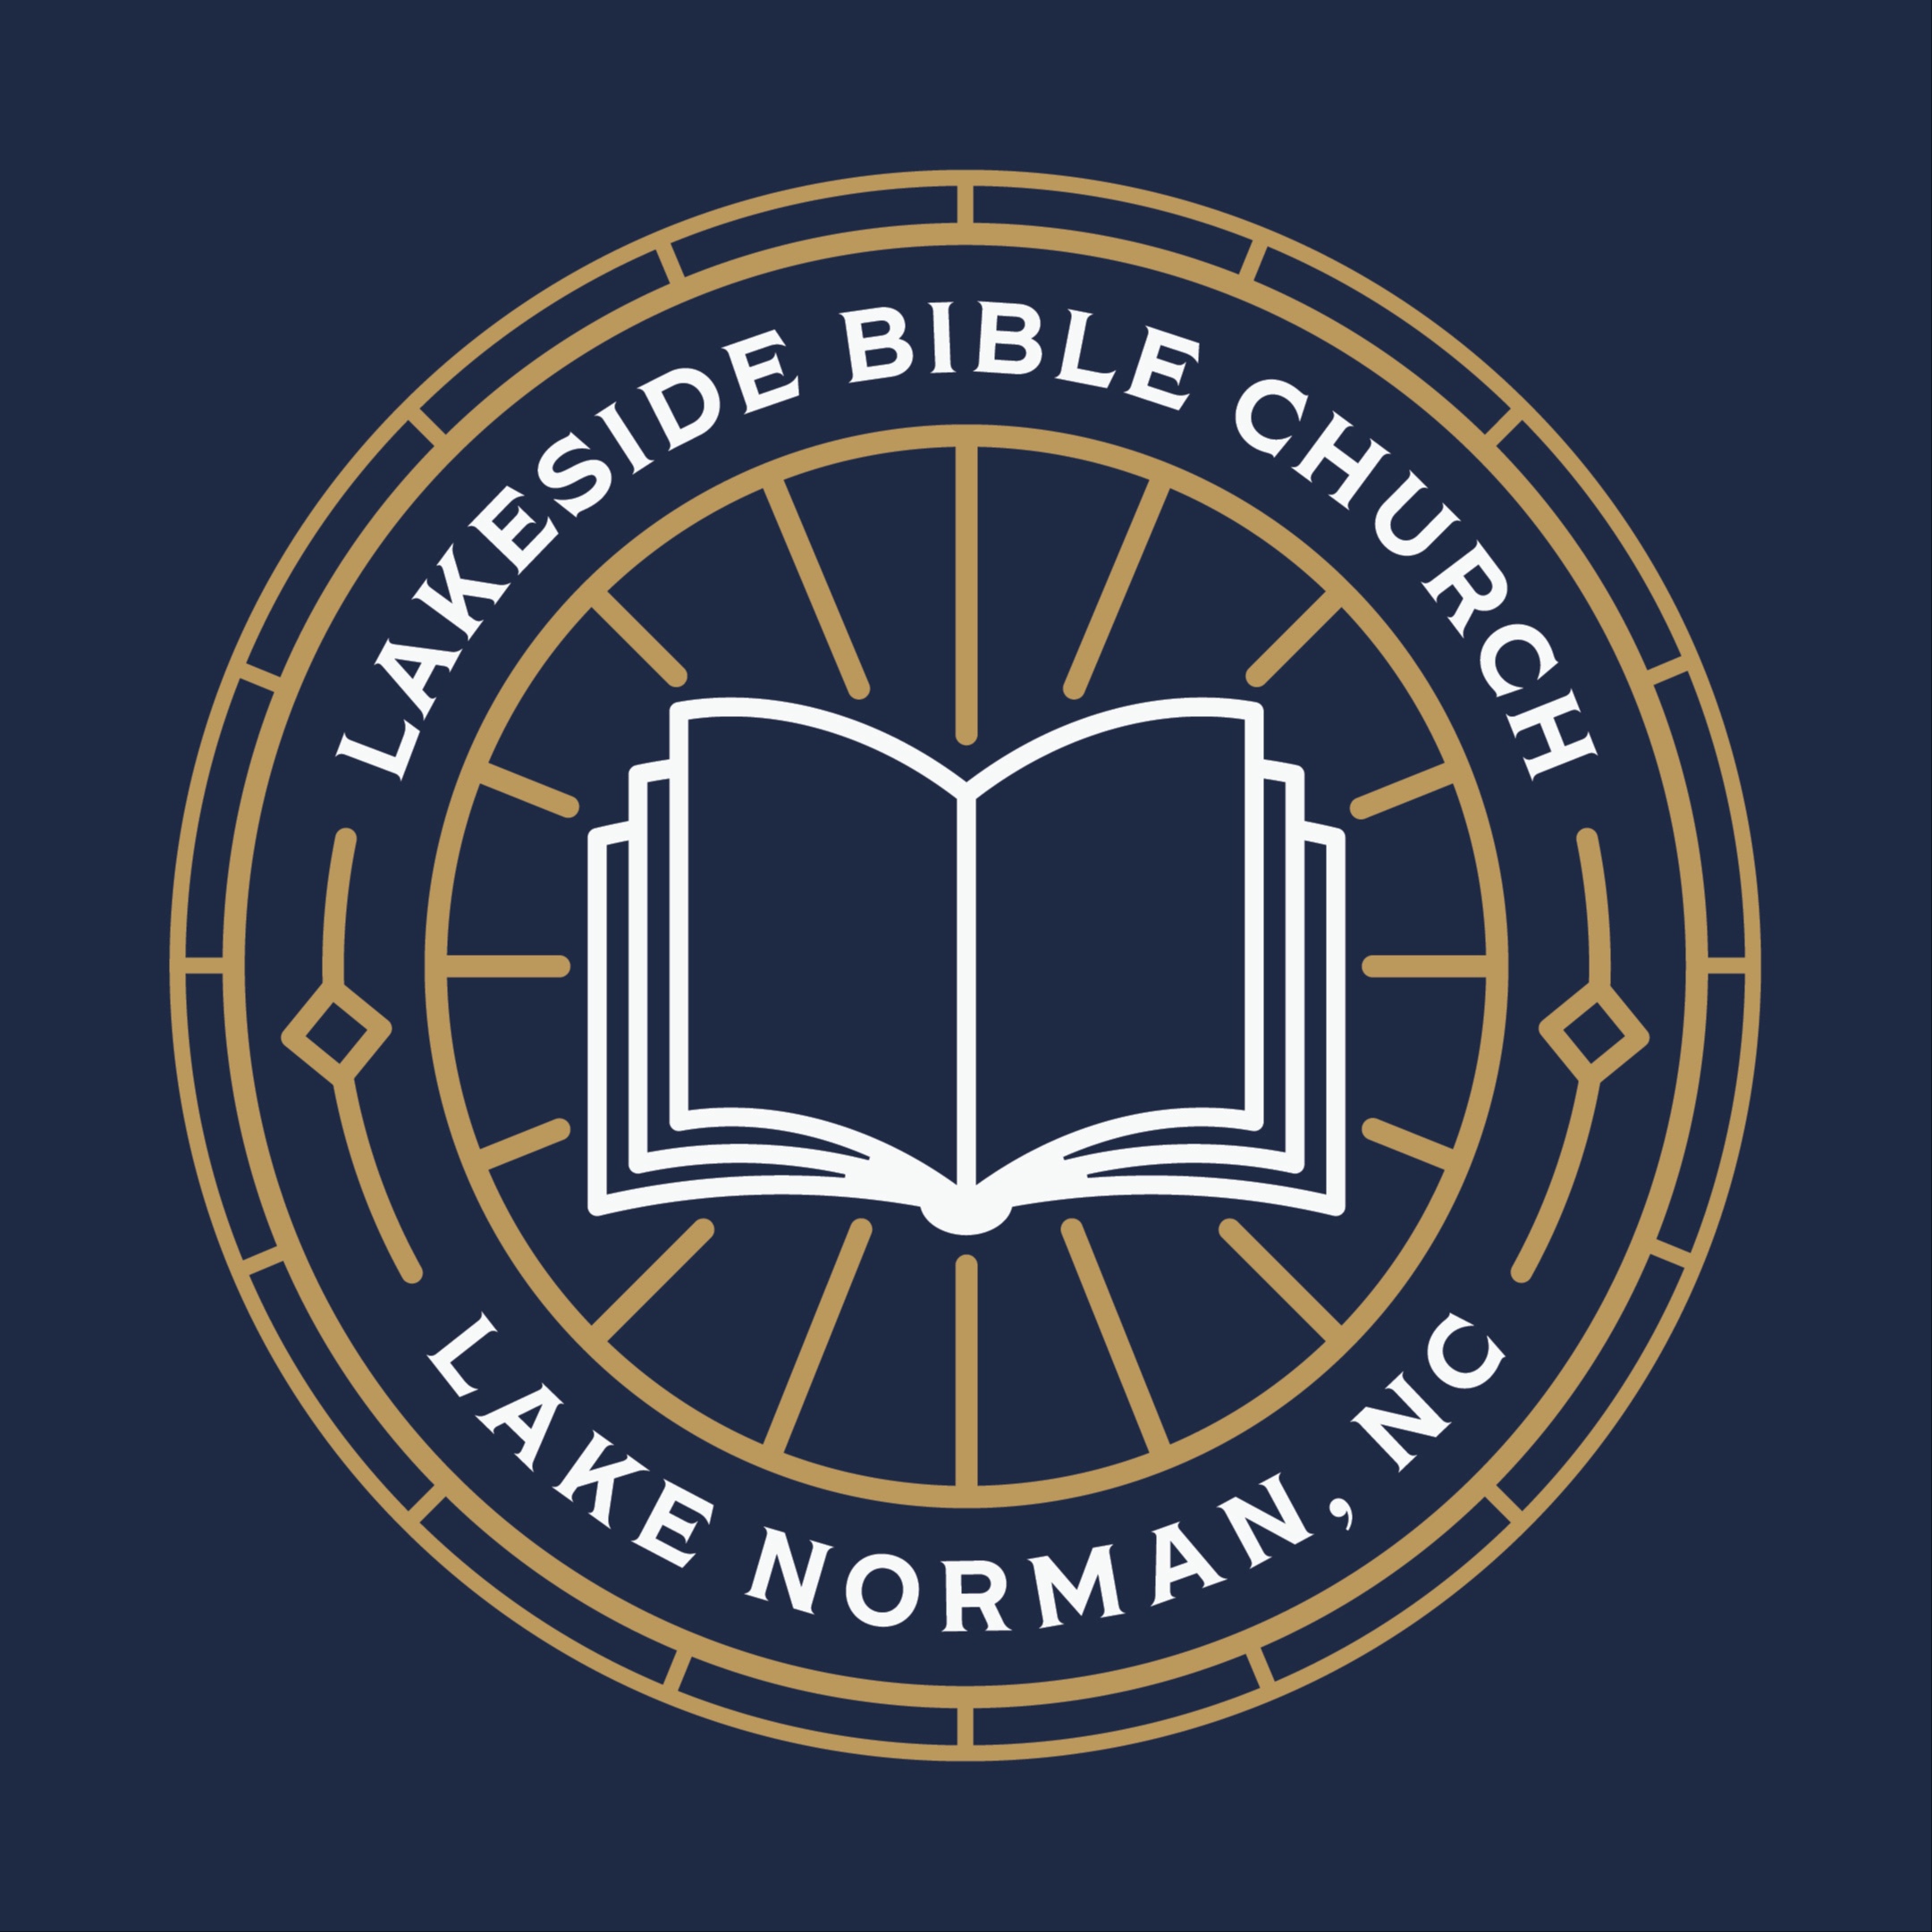 Lakeside Bible Church Sermons